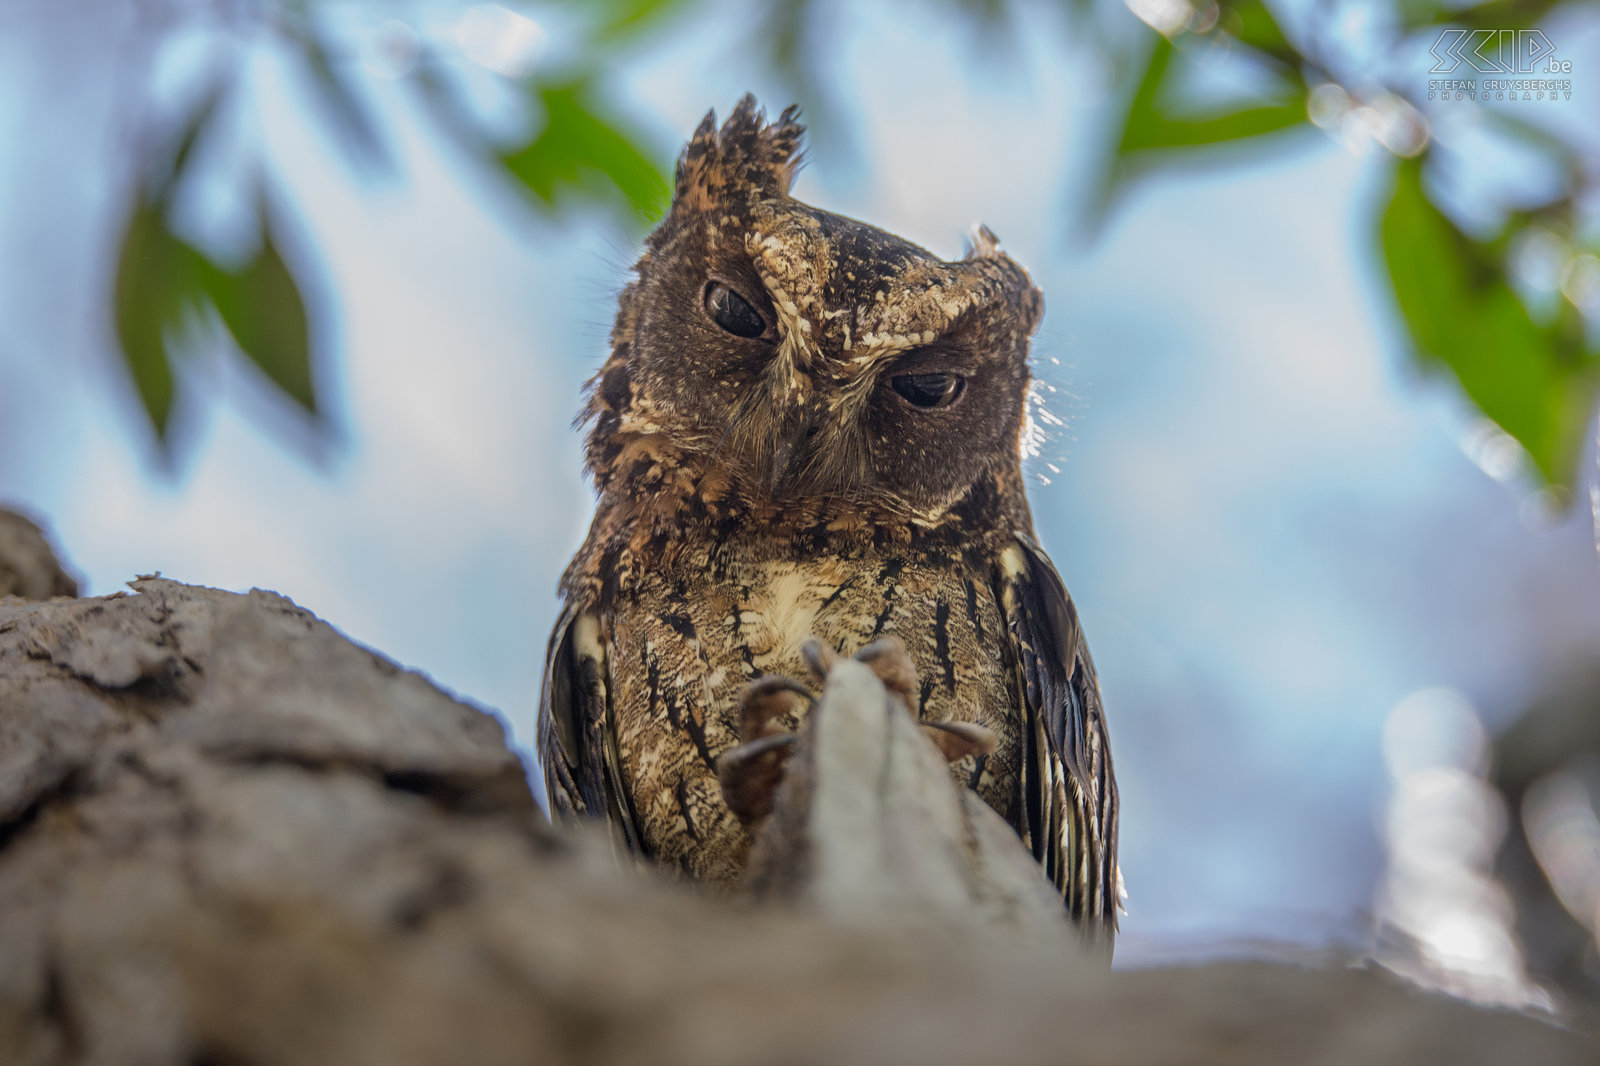 Kirindy - Malagasy scops owl Malagasy scops owl or rainforest scops owl (Otus rutilus) Stefan Cruysberghs